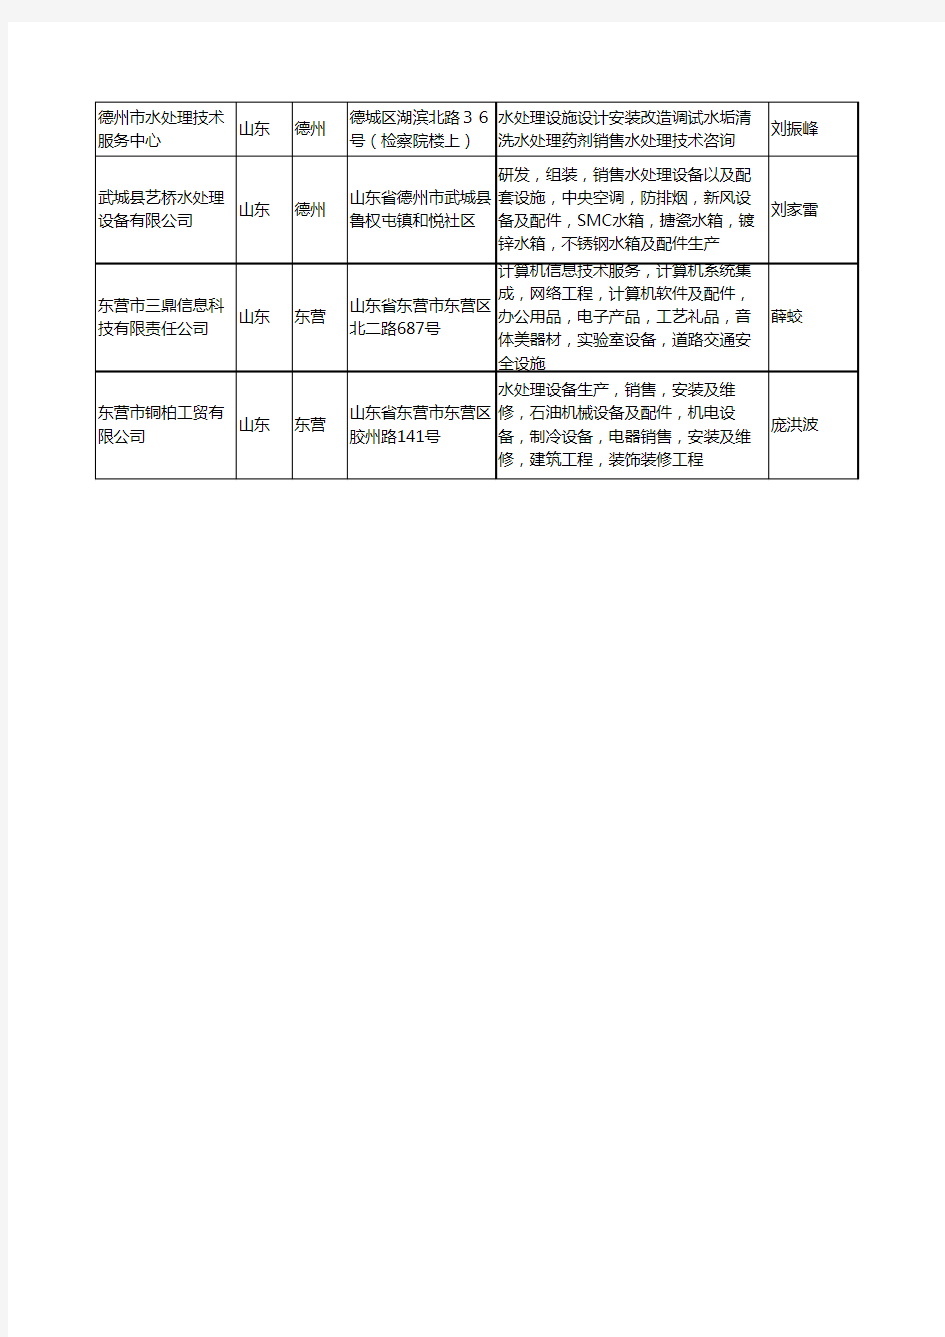 2020新版山东省水处理设施工商企业公司名录名单黄页大全14家